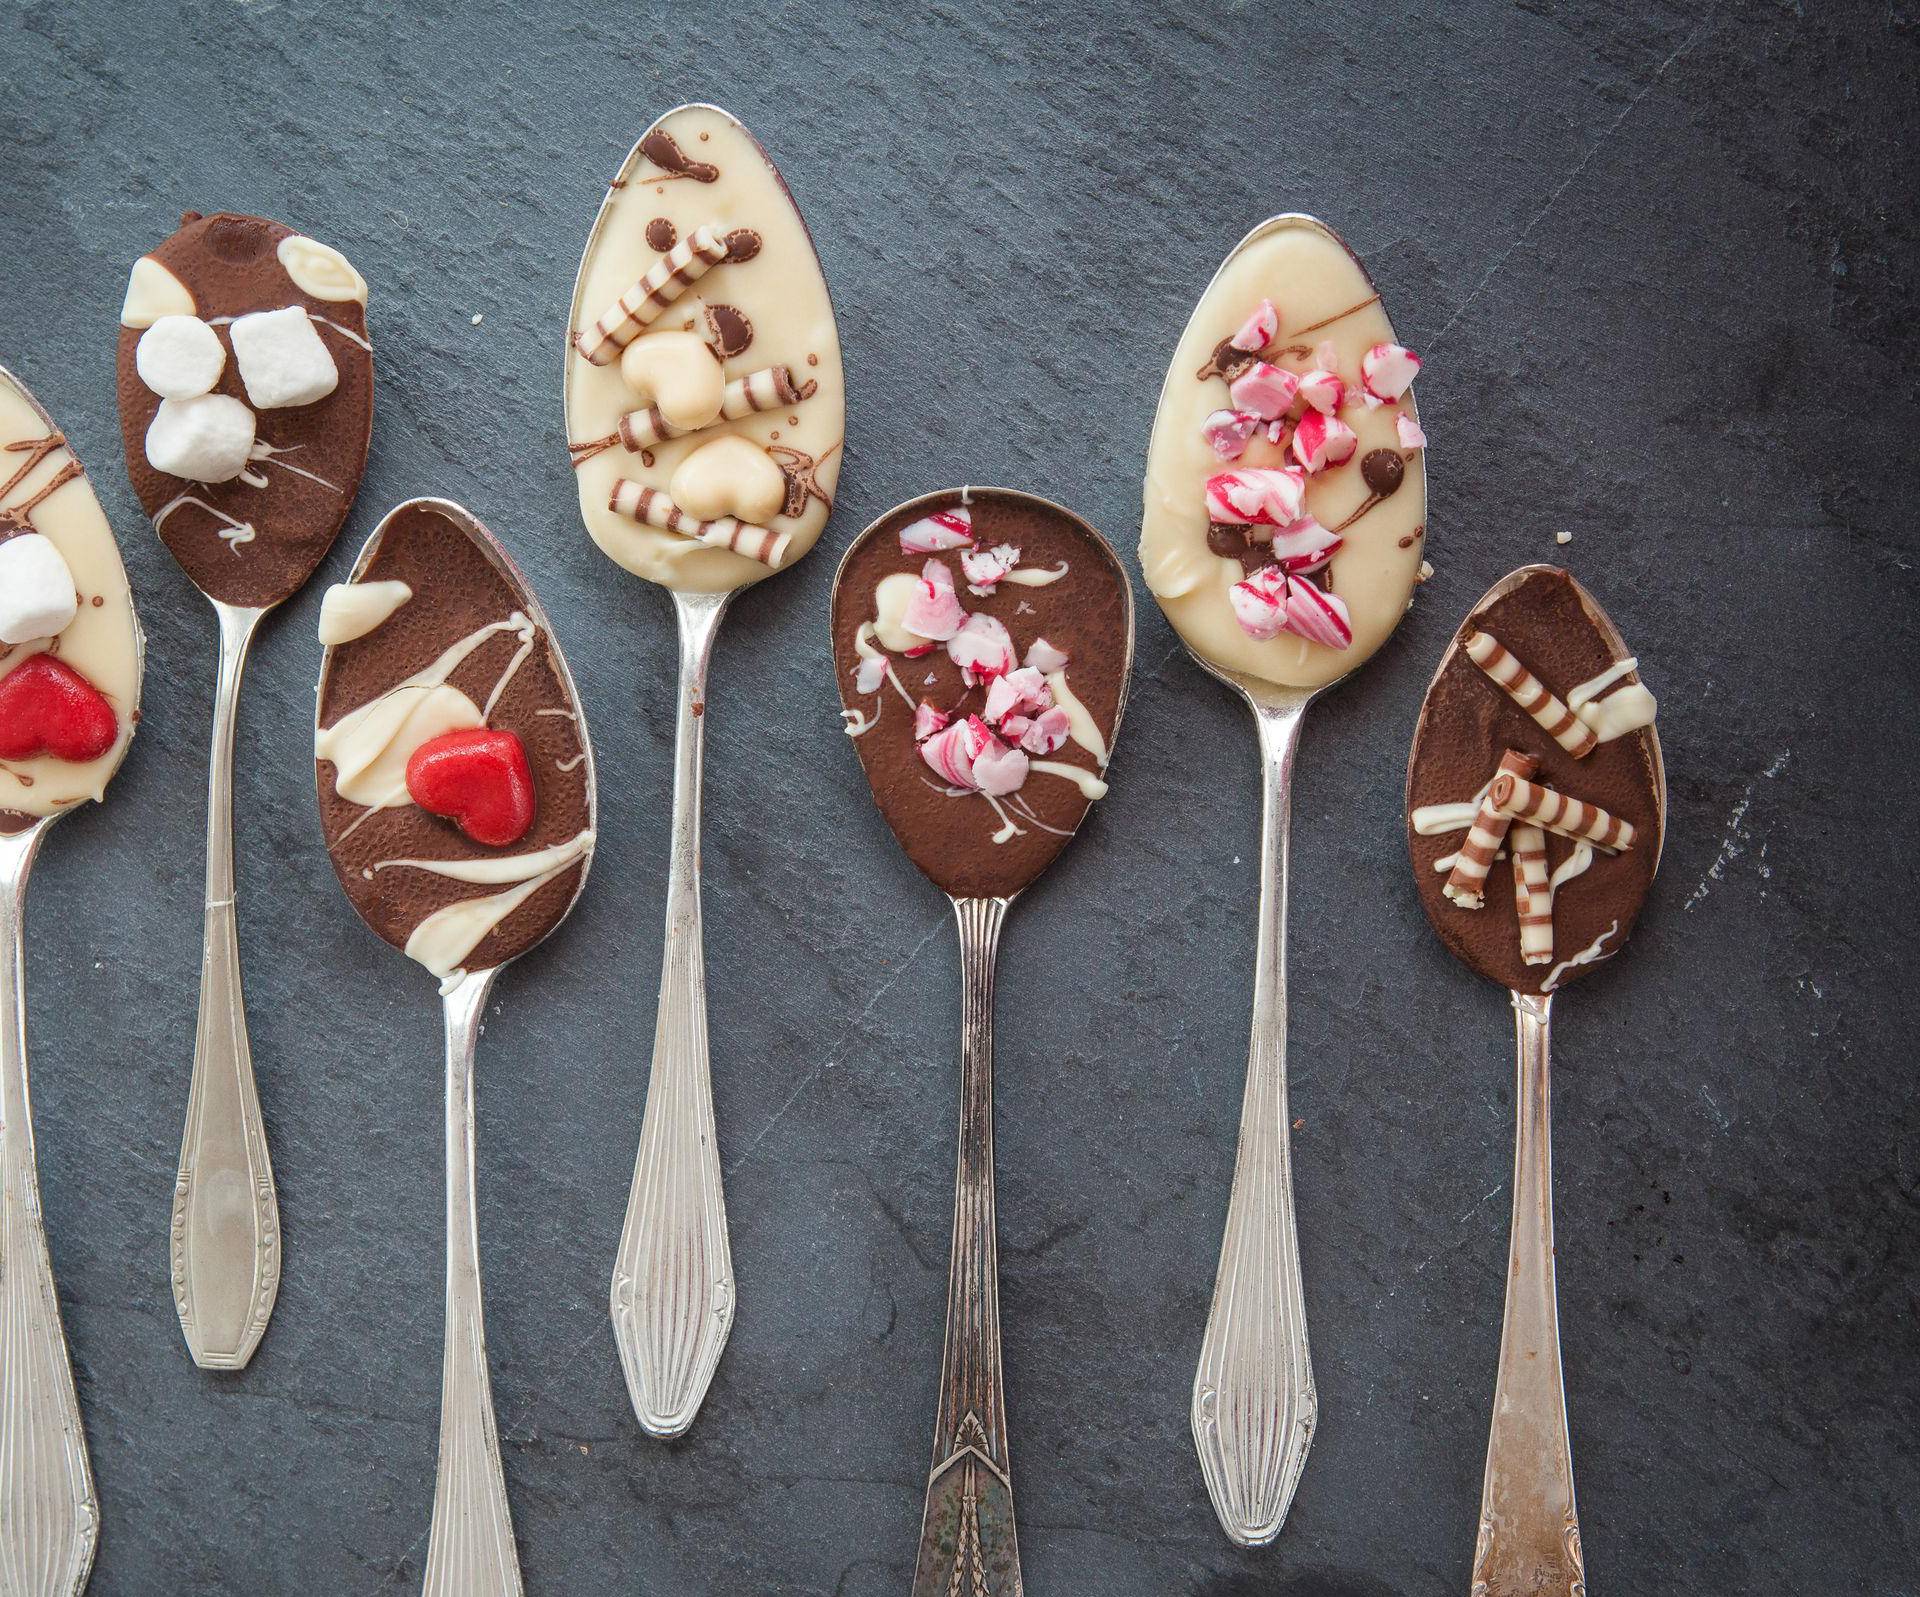 Imate višak čokoladnih mrvica: Super ideje kako ih iskoristiti